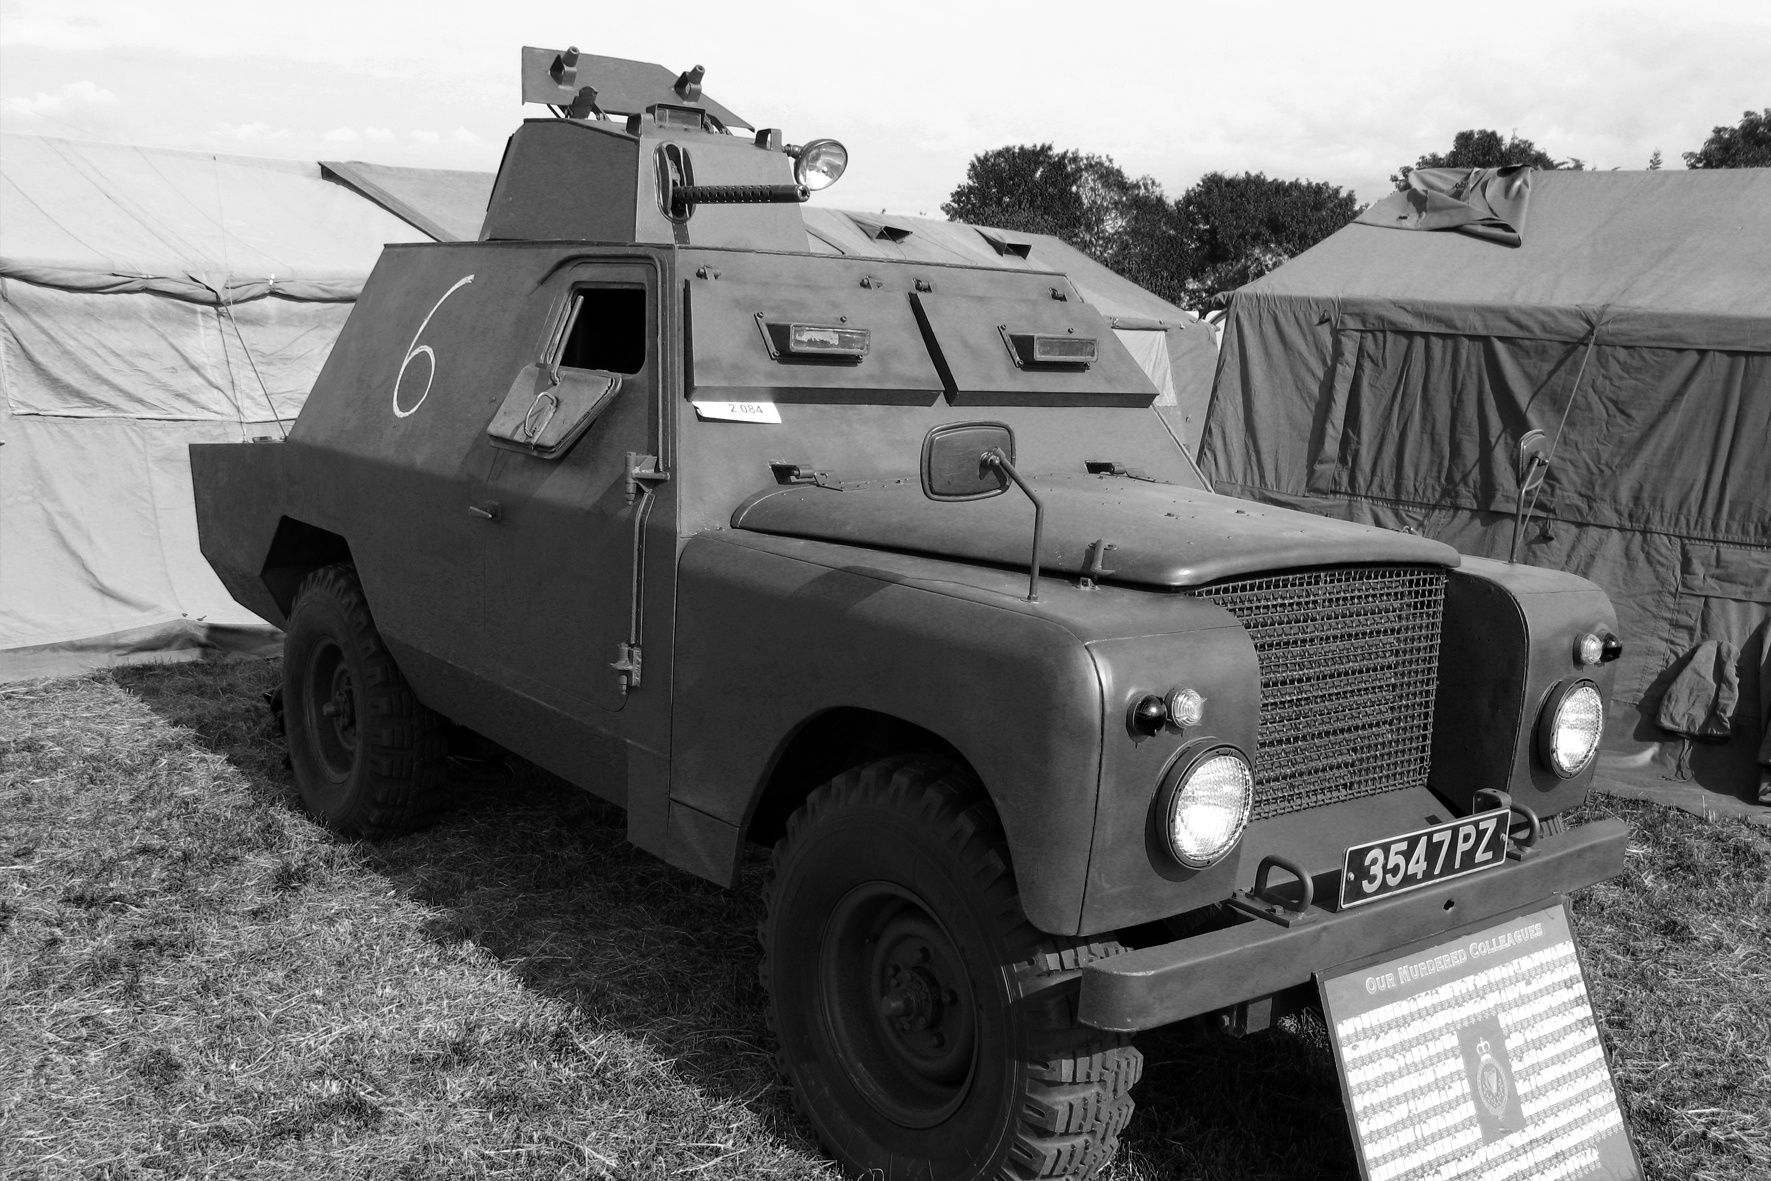 En av de bepansrade Shorland-bilar bestyckad med maskingevär som användes av den Nordirländska polismyndigheten The Royal Ulster Constabulary